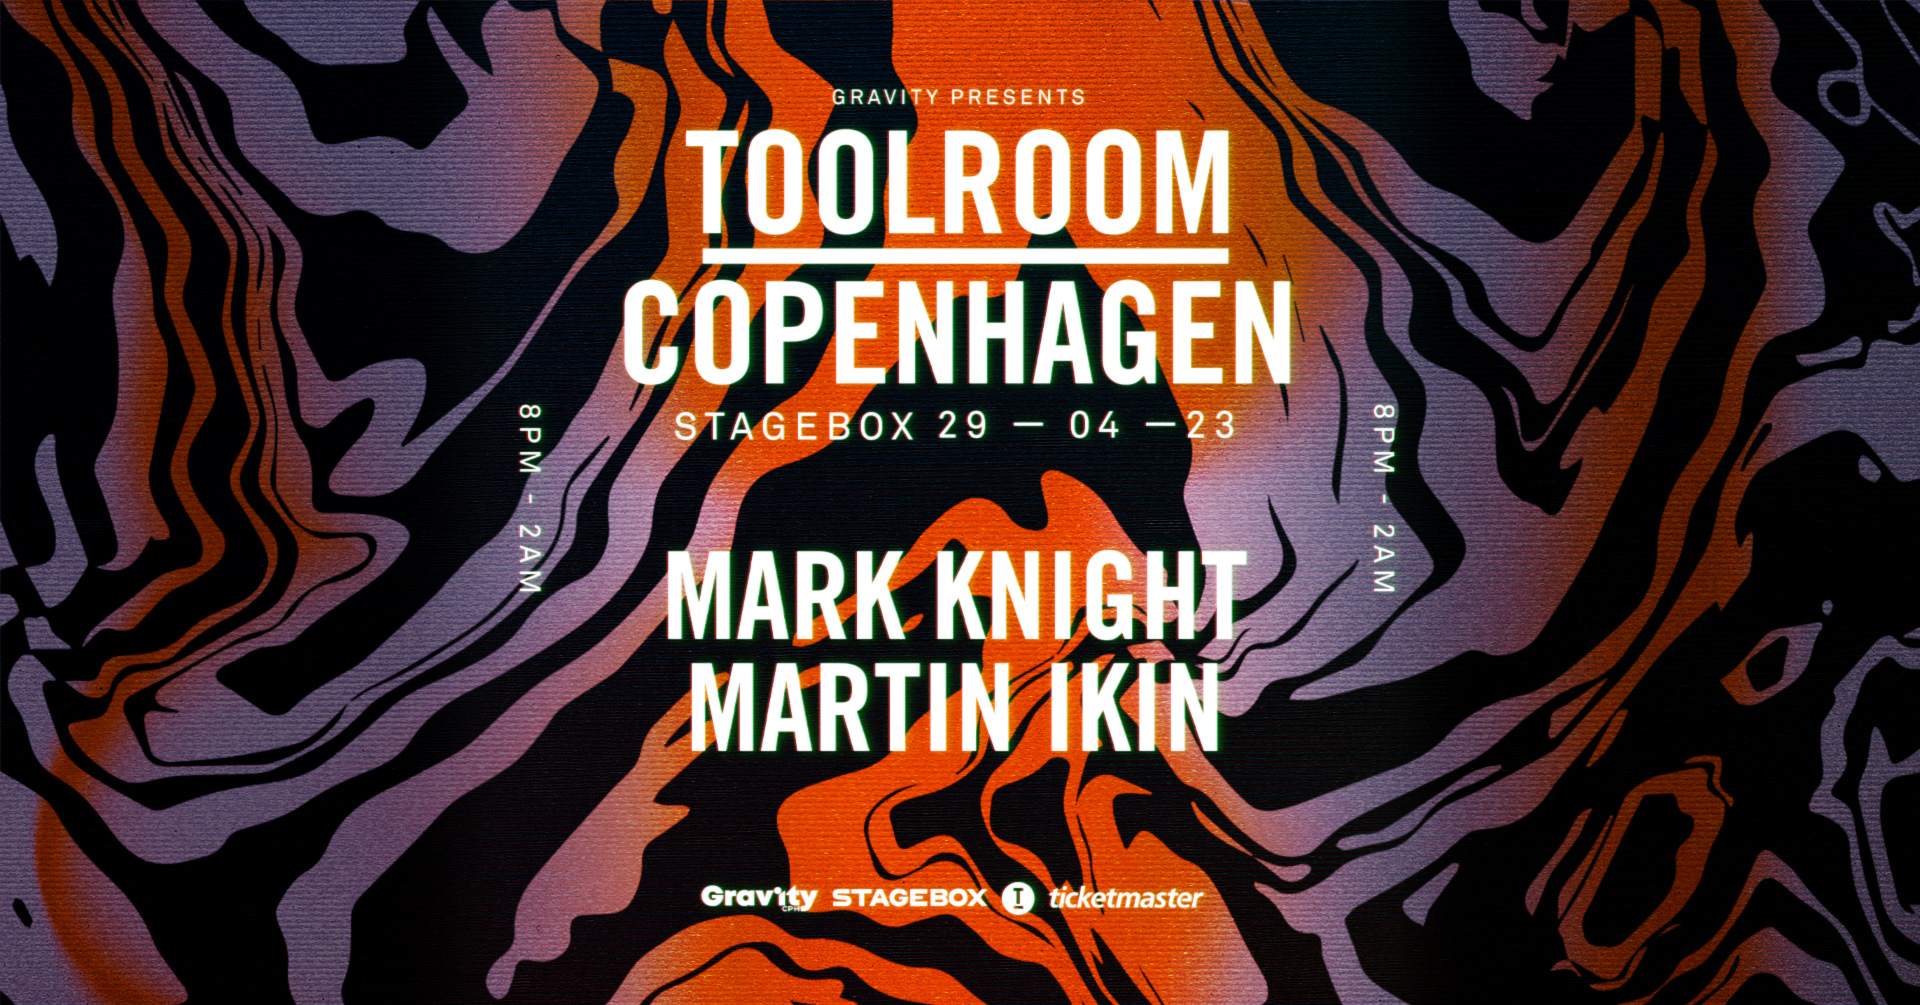 Toolroom Copenhagen. Mark Knight, Martin Ikin (The Factory Rave) - フライヤー表